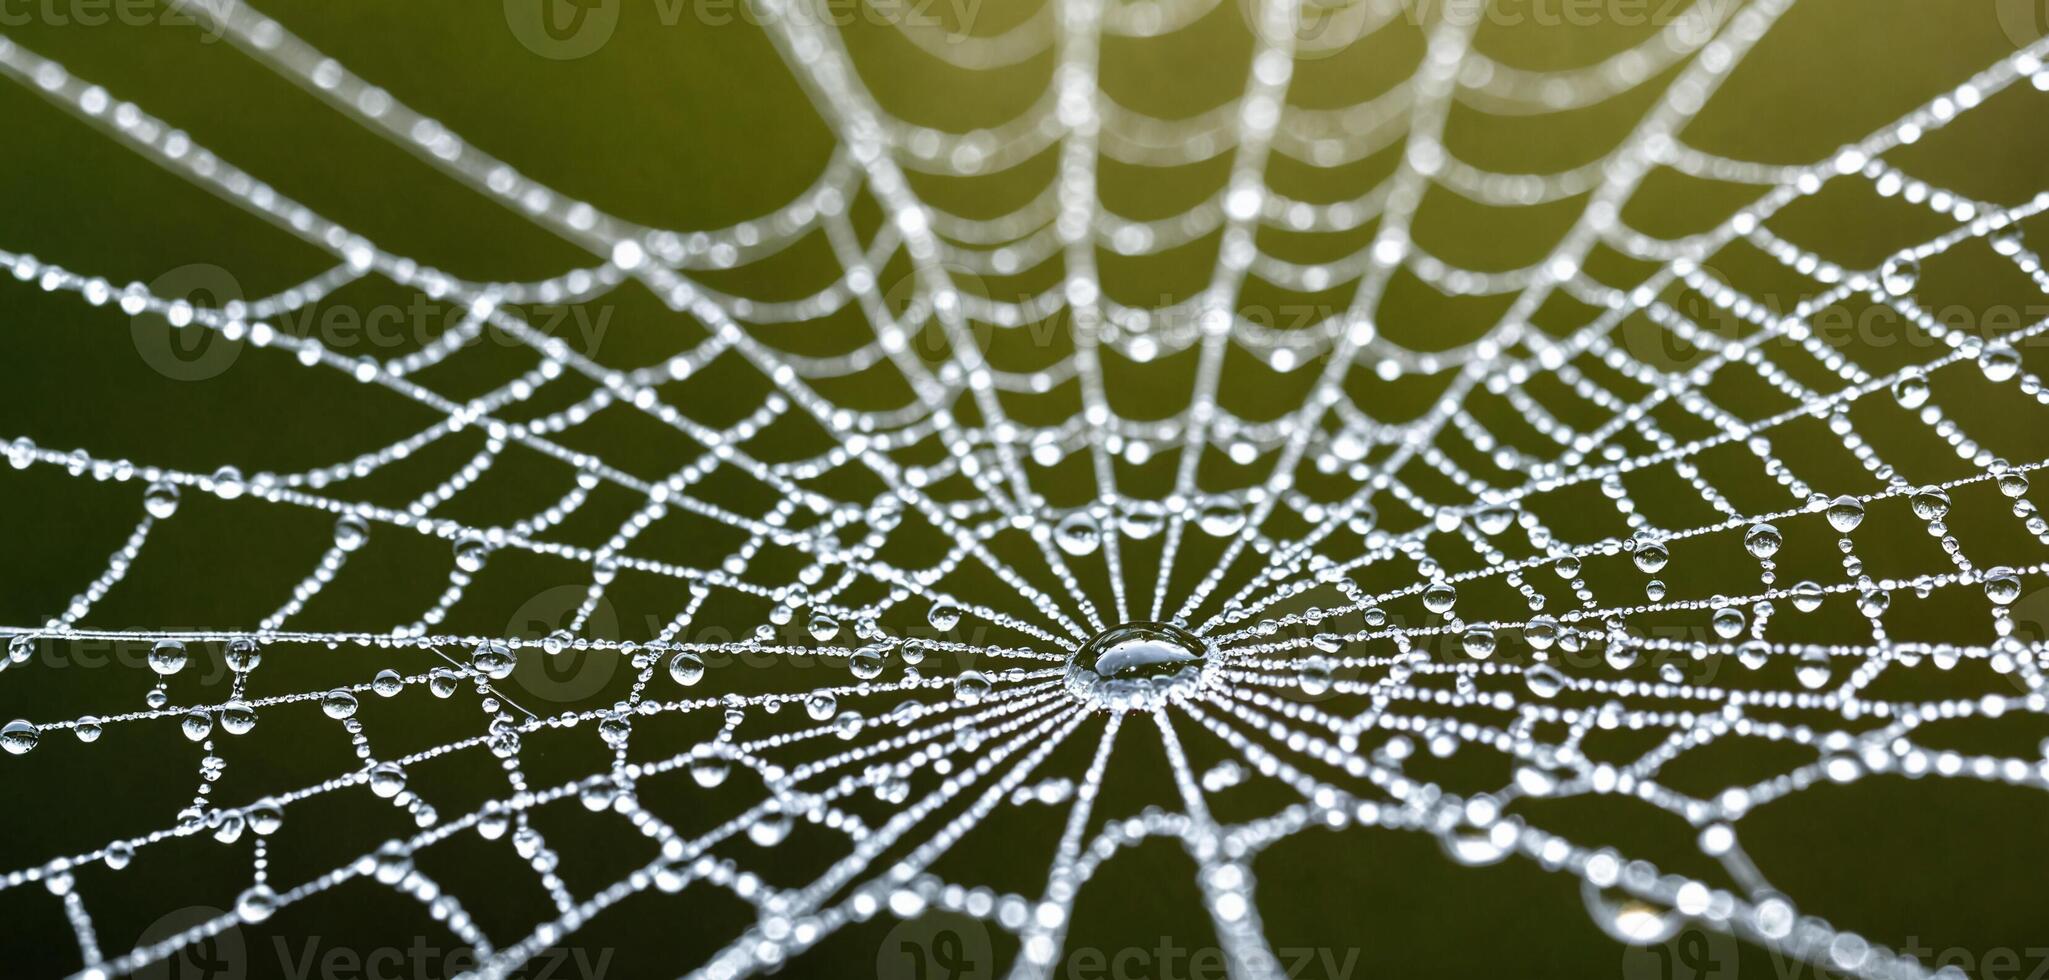 ai gegenereerd spinnenweb, dauw, ochtend- - glinstert met ochtend- dauw, natuurlijk licht, vertegenwoordigt natuur schoonheid. dauw druppels verfraaien spinnenweb, kalmte van ochtend, geeft aan natuur weerstand. foto